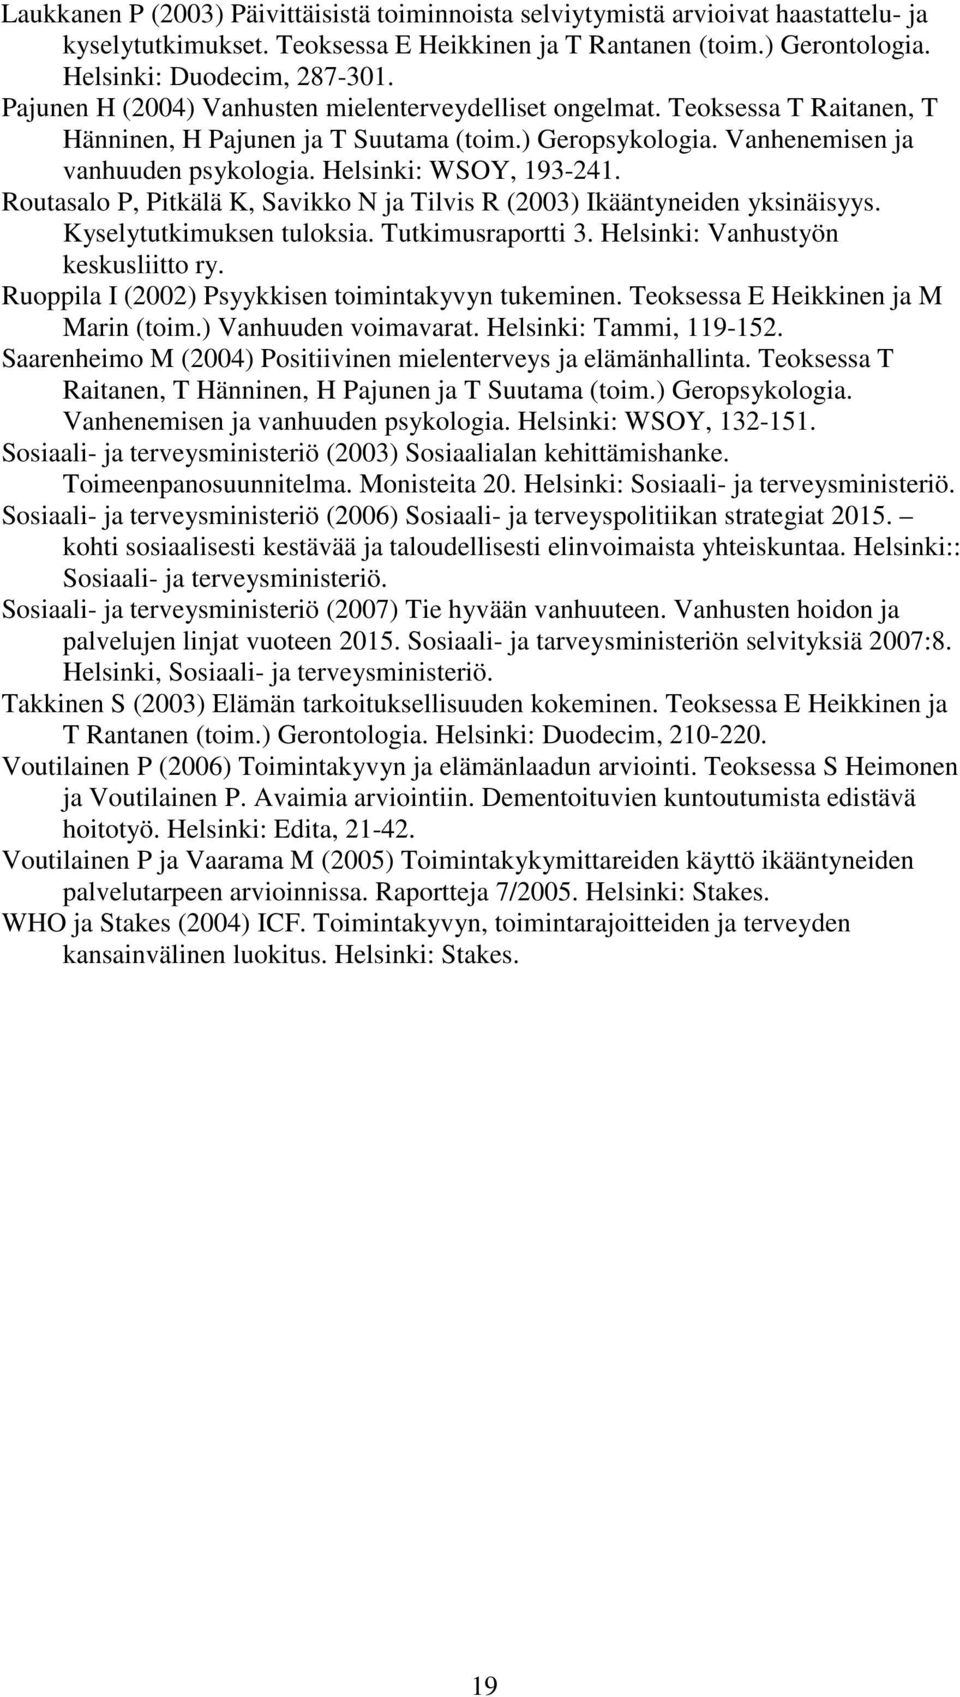 Helsinki: WSOY, 193-241. Routasalo P, Pitkälä K, Savikko N ja Tilvis R (2003) Ikääntyneiden yksinäisyys. Kyselytutkimuksen tuloksia. Tutkimusraportti 3. Helsinki: Vanhustyön keskusliitto ry.